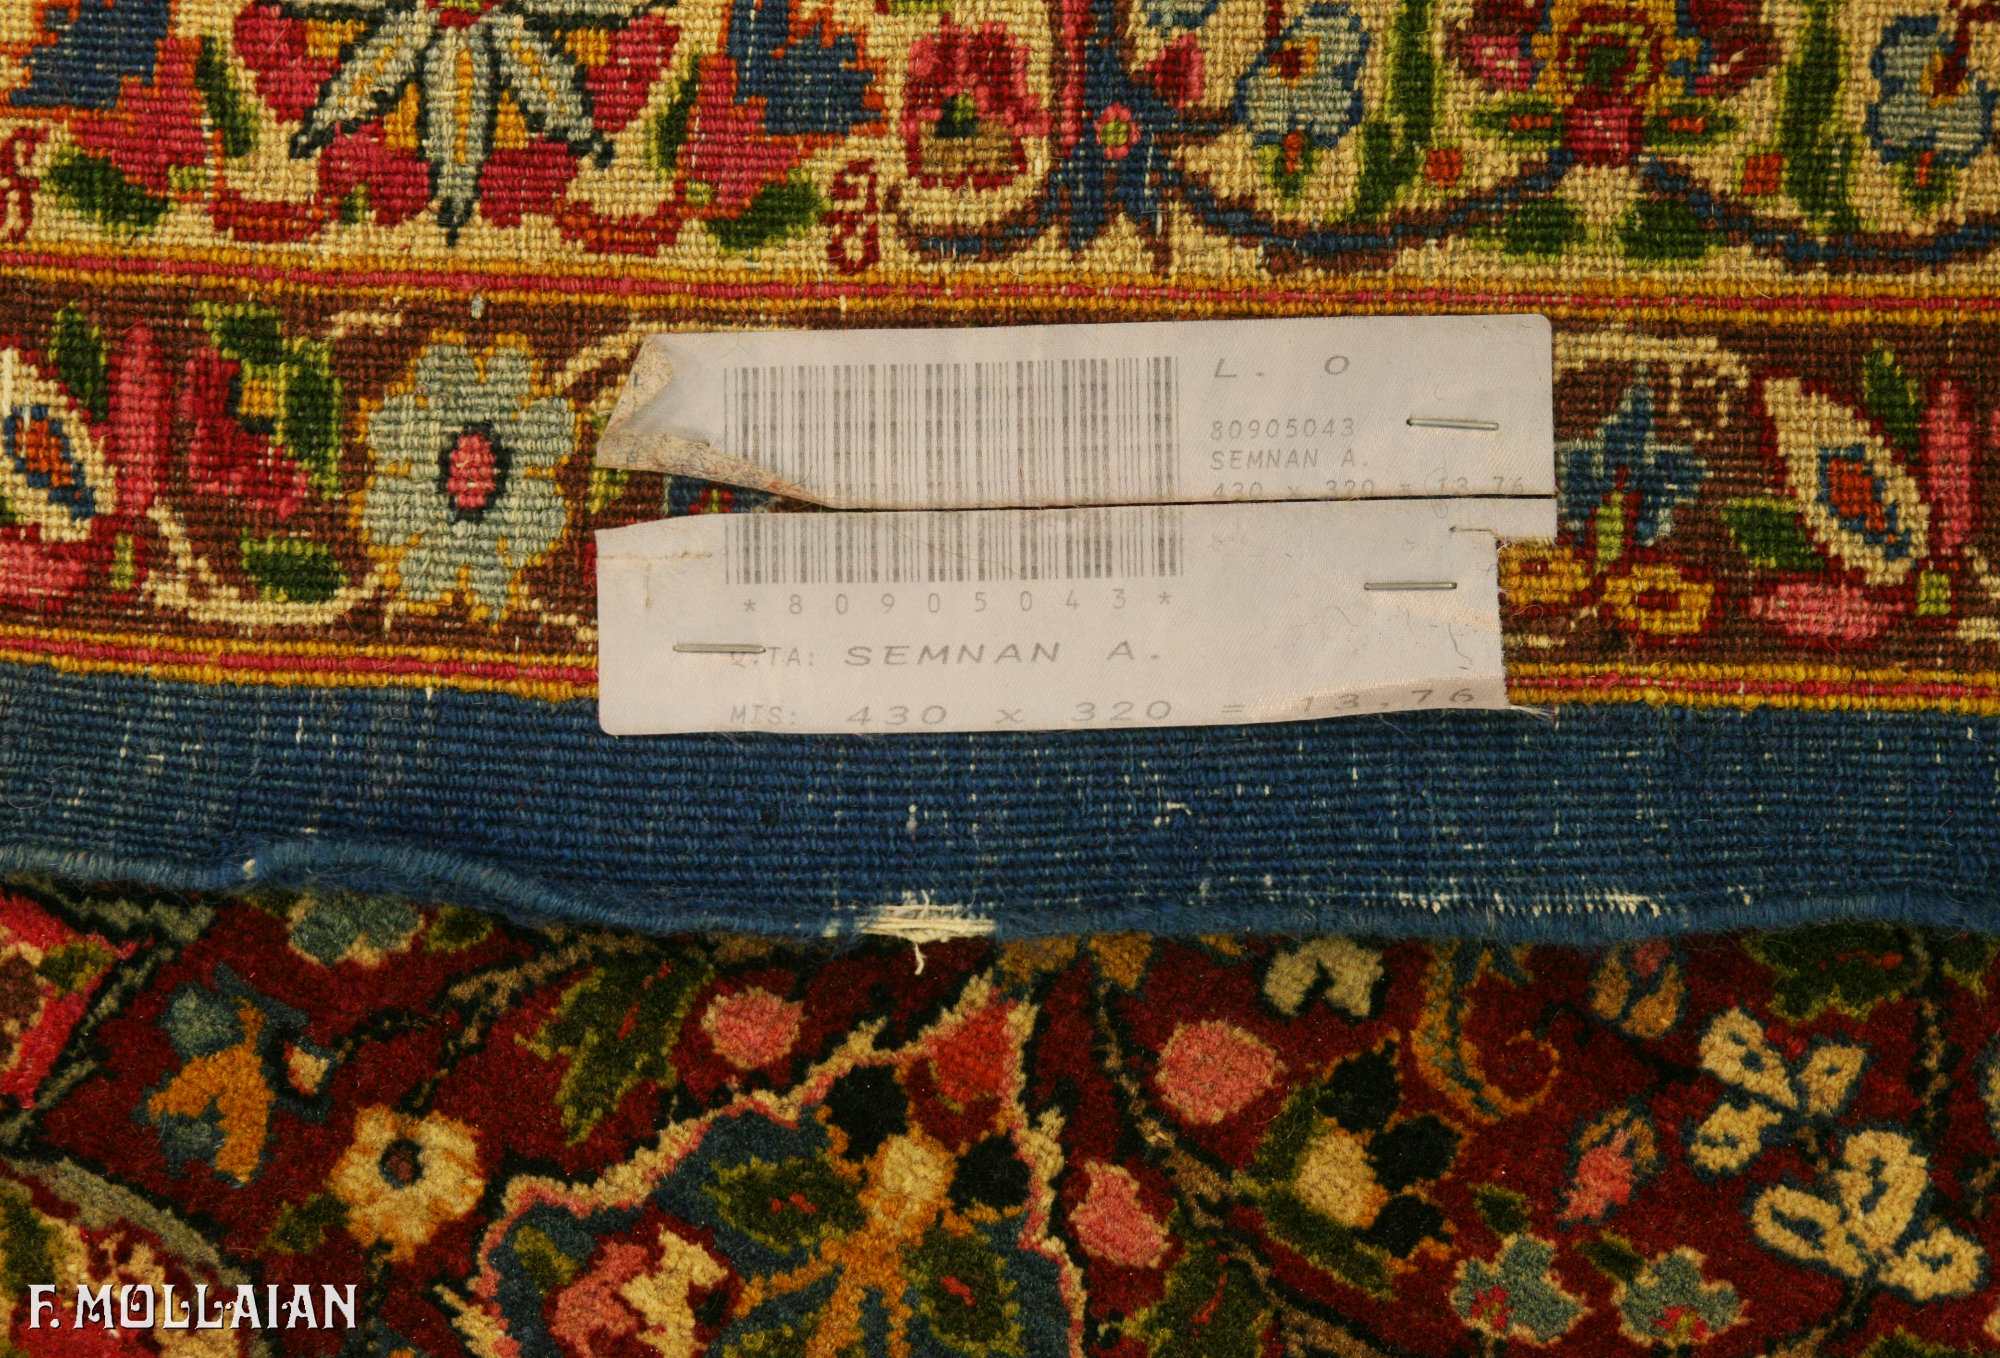 Antique Persian Semnan Carpet n°:80905043